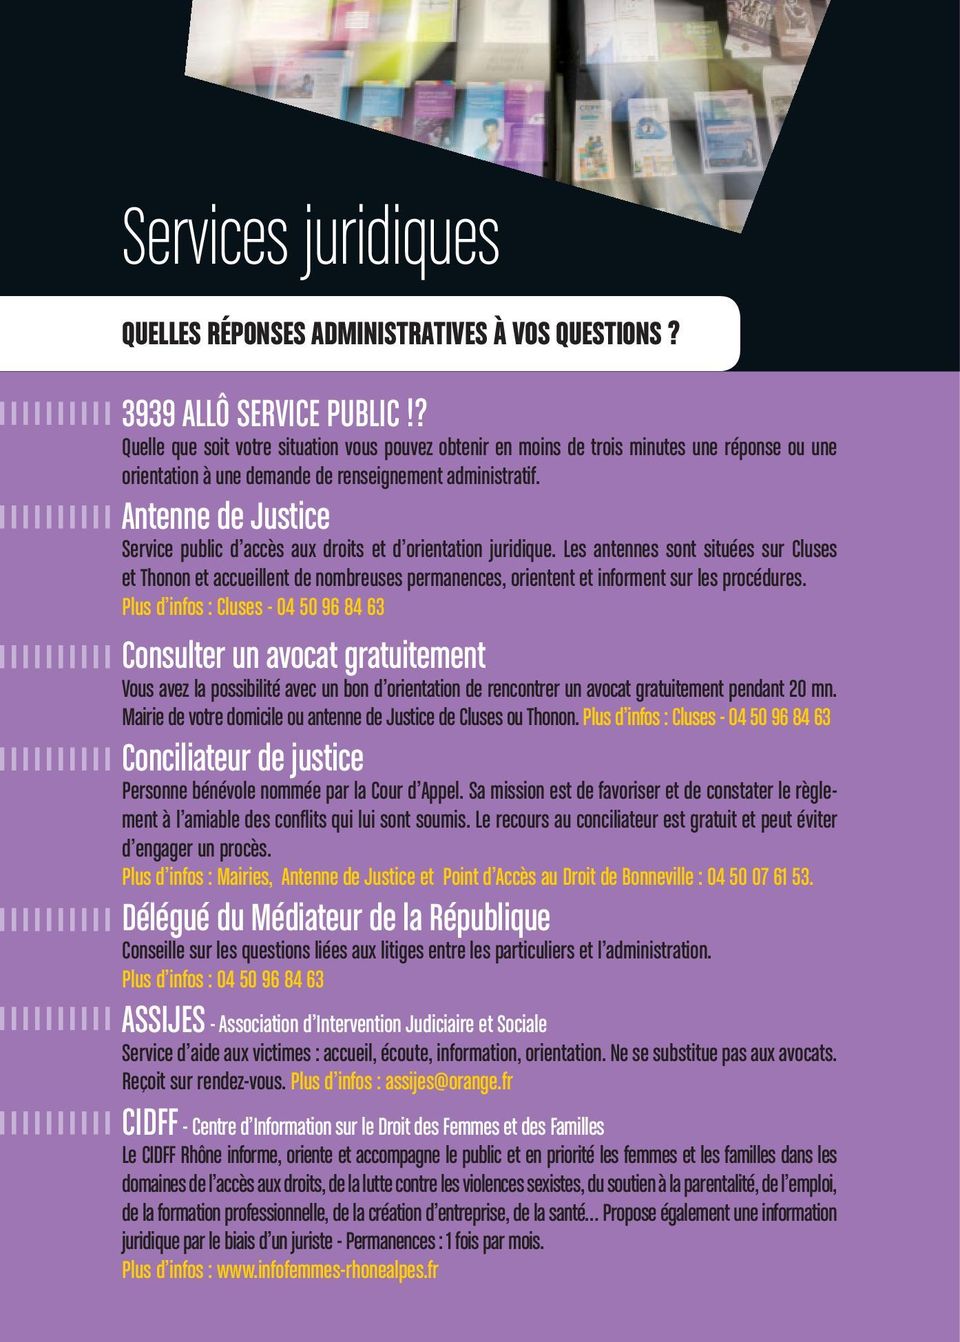 Antenne de Justice Service public d accès aux droits et d orientation juridique.